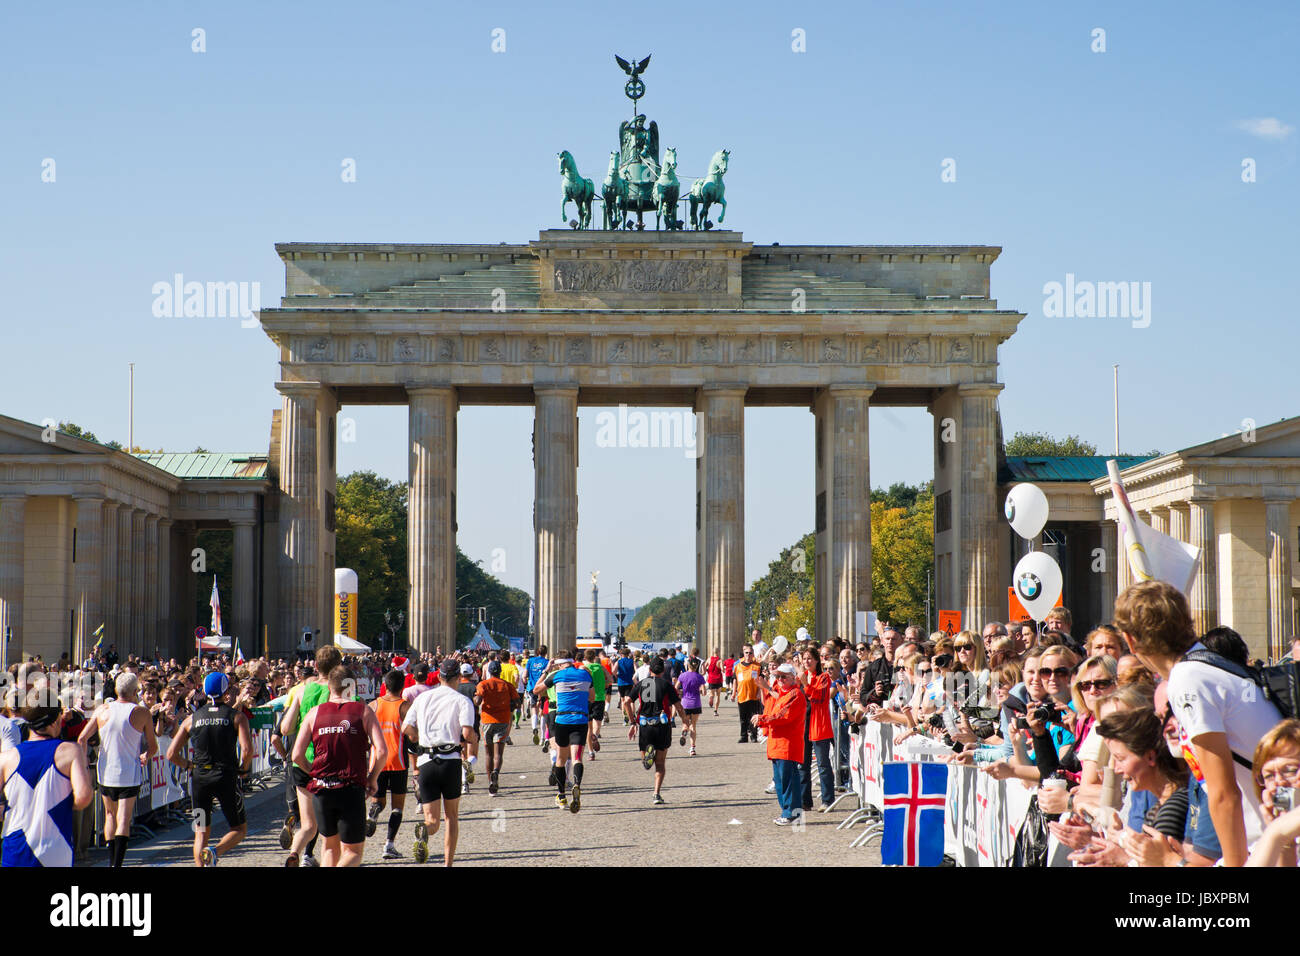 Berlino, Germania - 25 settembre: i partecipanti della maratona di Berlino la finitura presso la Porta di Brandeburgo il 7 settembre 25, 2011 a Berlino, Germania. Foto Stock